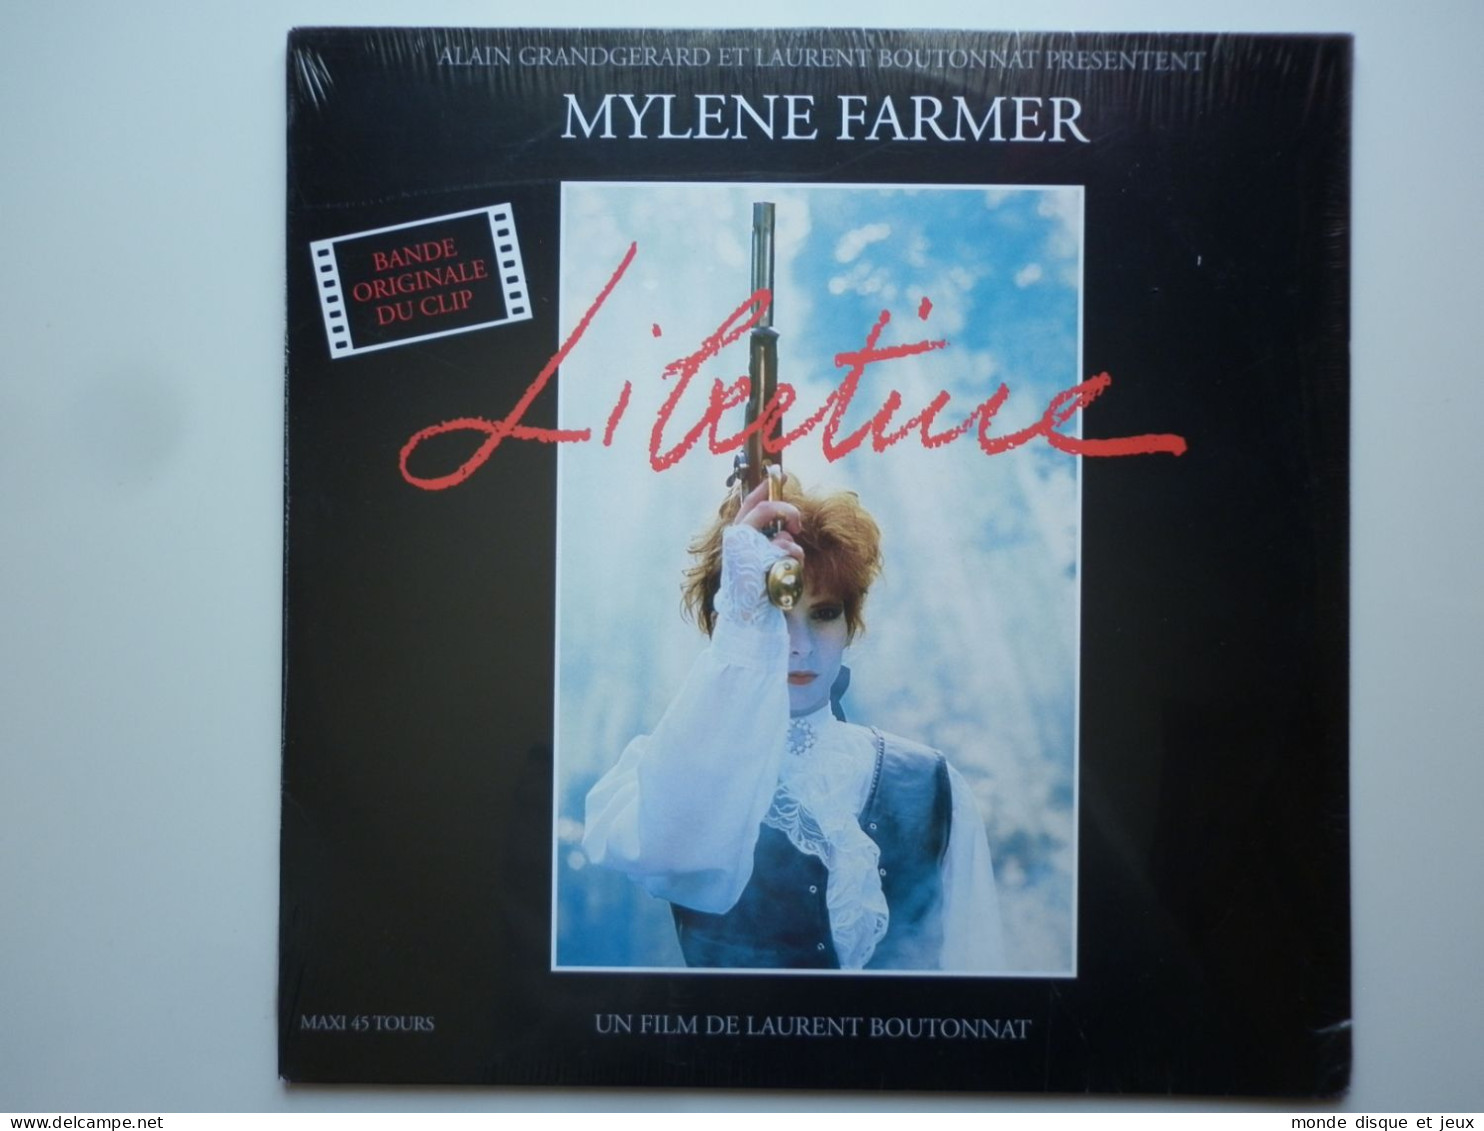 Mylene Farmer Maxi 45Tours Vinyle Libertine Bande Original Du Clip Exclusivité Couleur Rouge - 45 G - Maxi-Single